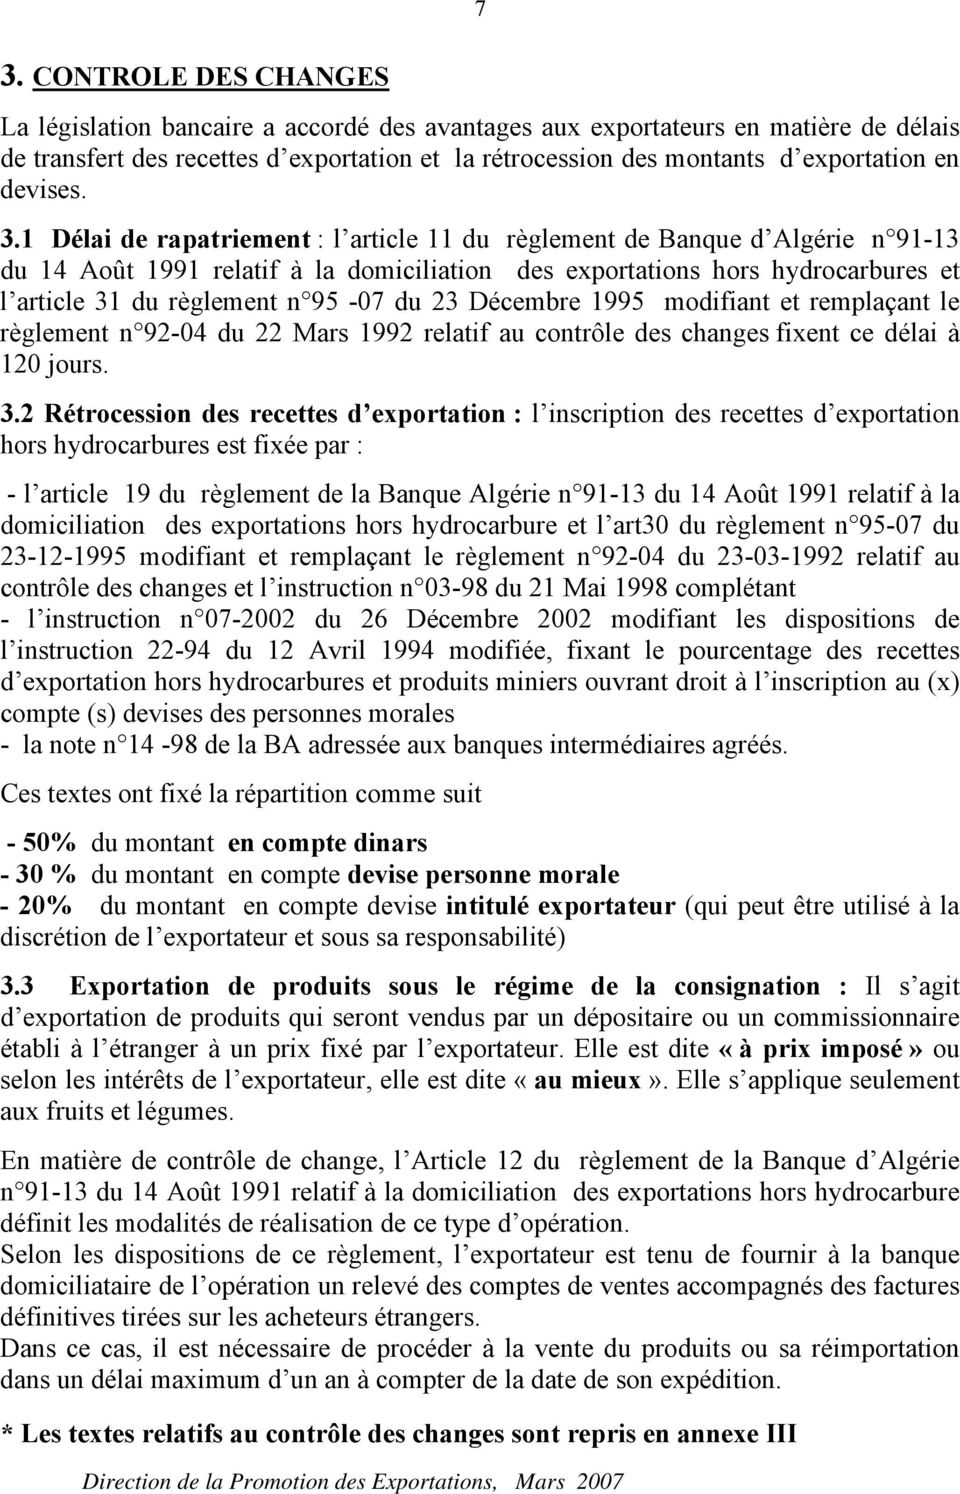 1 Délai de rapatriement : l article 11 du règlement de Banque d Algérie n 91-13 du 14 Août 1991 relatif à la domiciliation des exportations hors hydrocarbures et l article 31 du règlement n 95-07 du